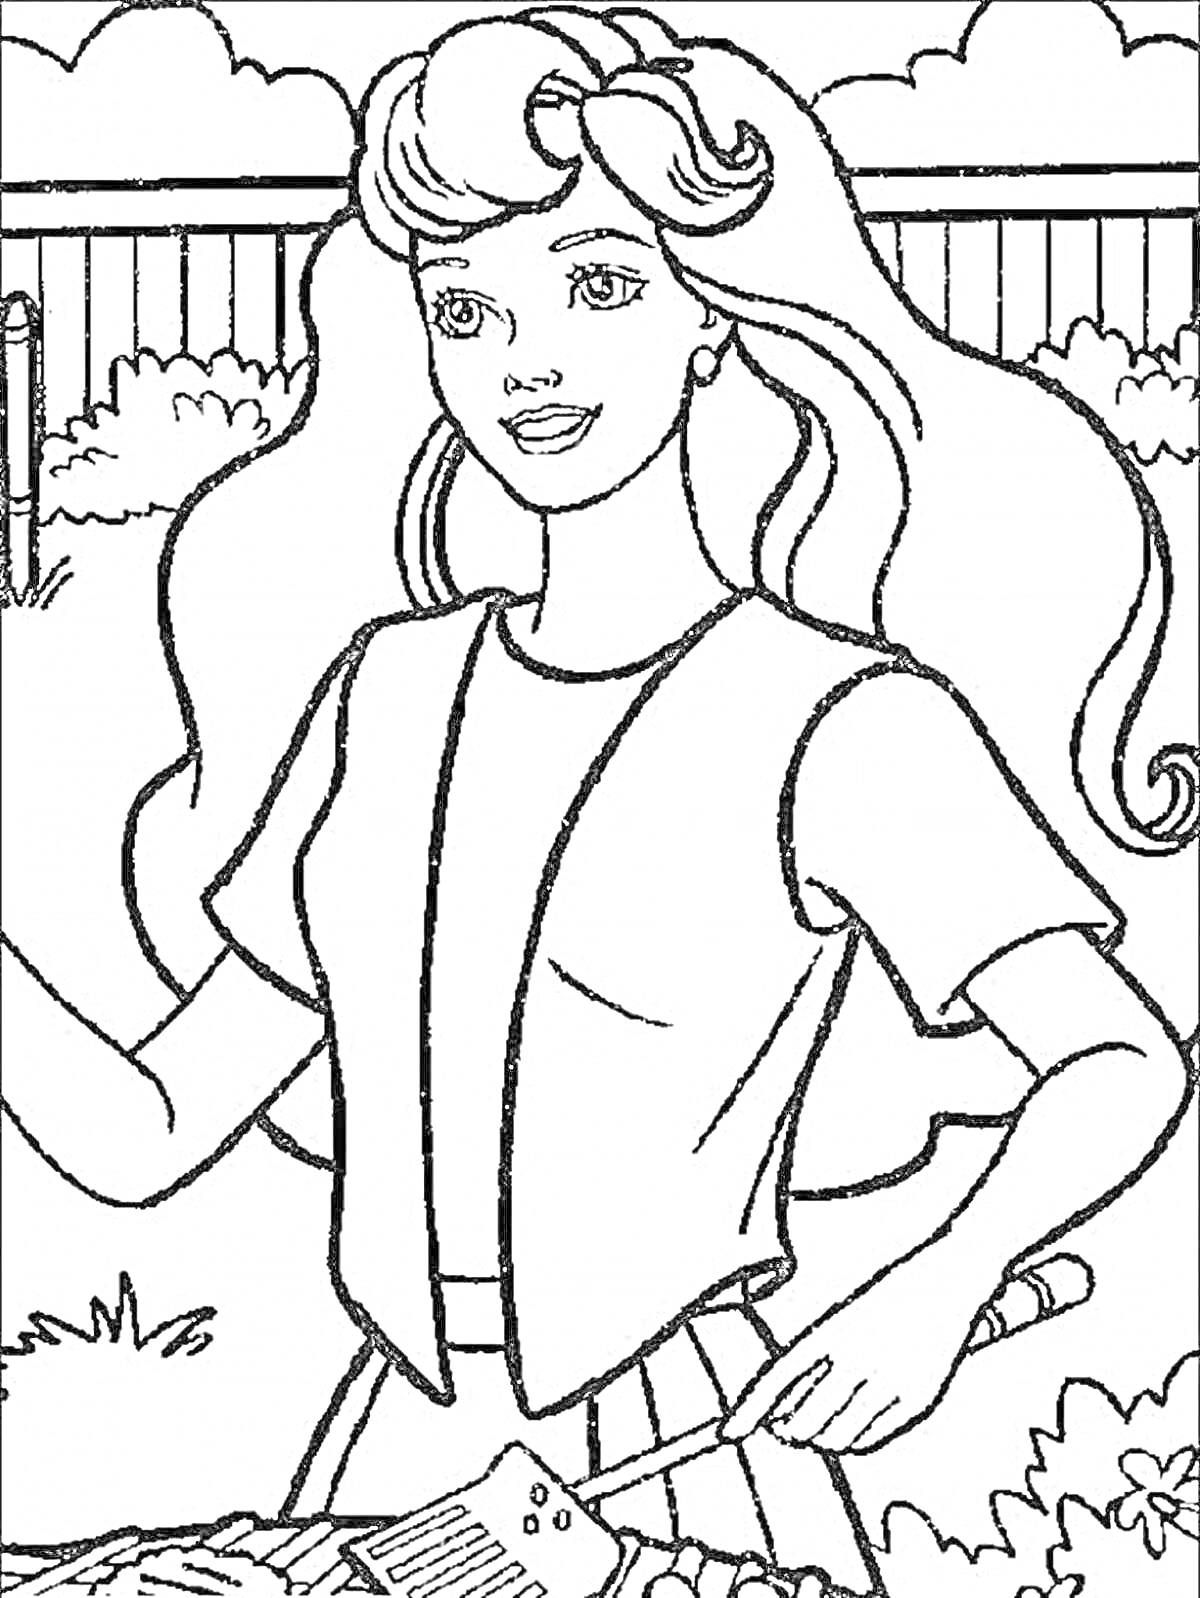 Раскраска Барби за приготовлением еды на гриле в саду (Барби с длинными волосами, в жилетке и футболке, с лопаткой для гриля на фоне забора и кустарников).